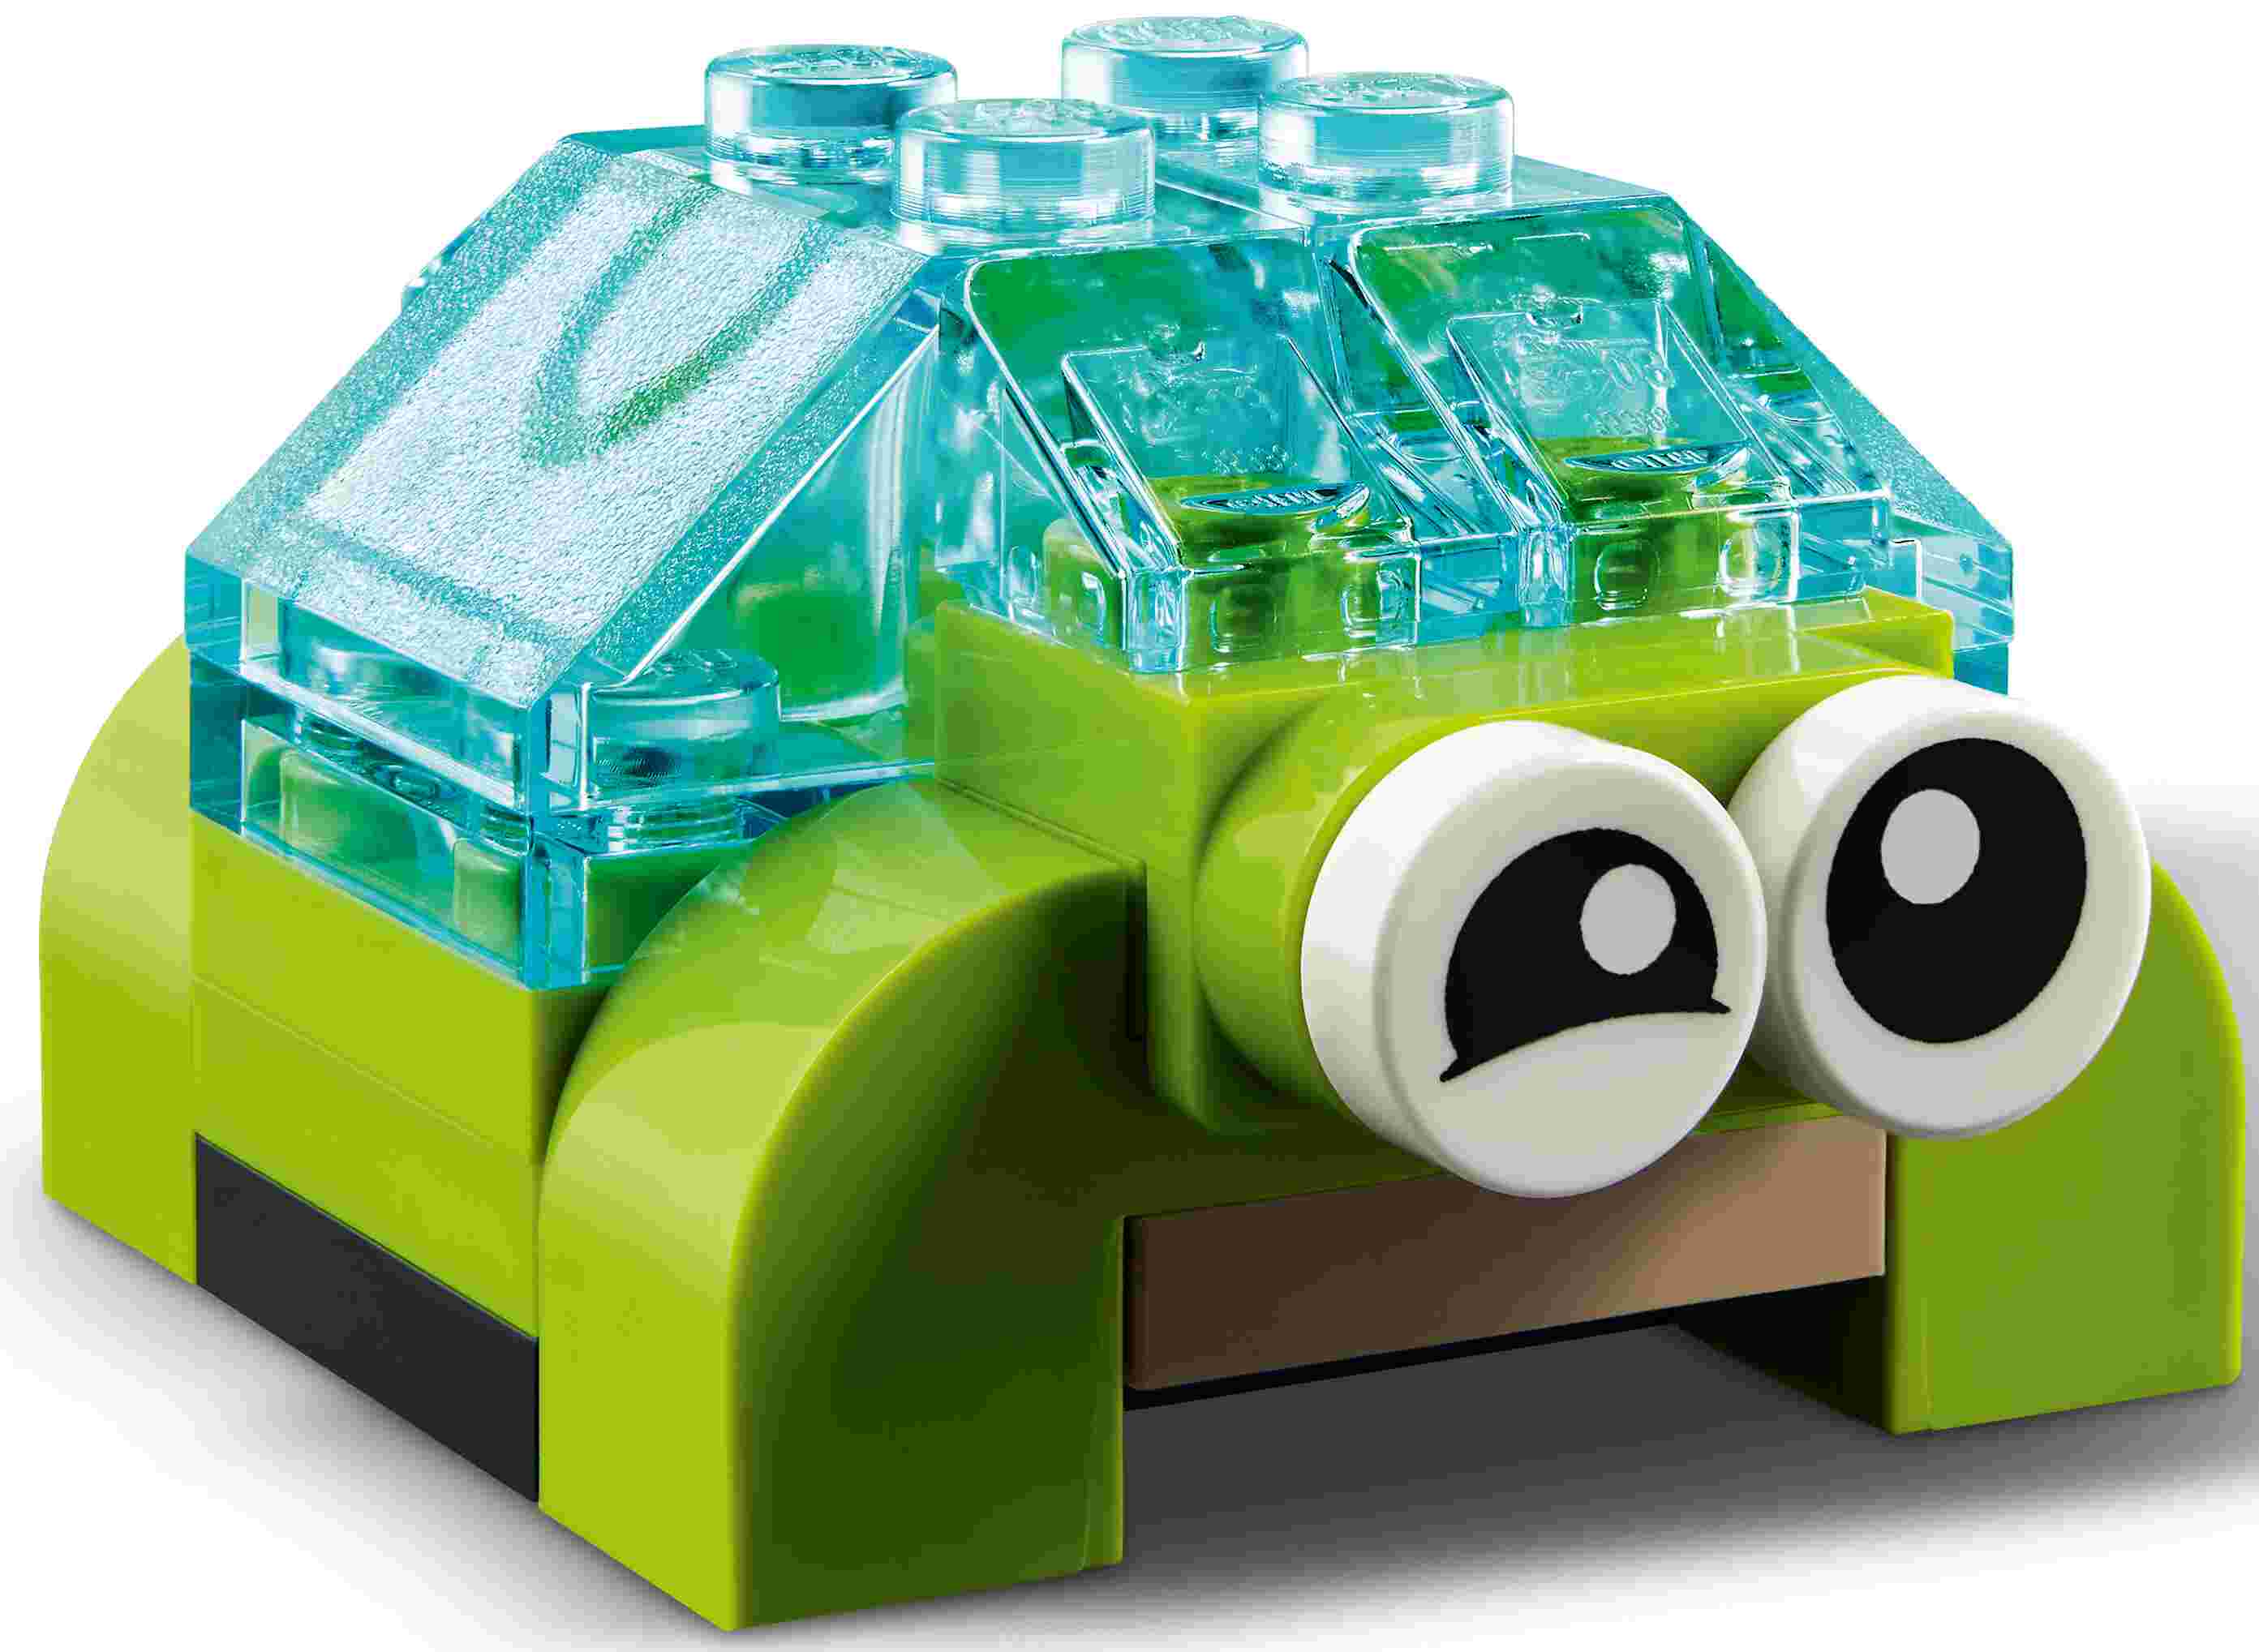 LEGO 11013 Classic Kreativ-Bauset mit durchsichtigen Steinen, 8 Bauideen